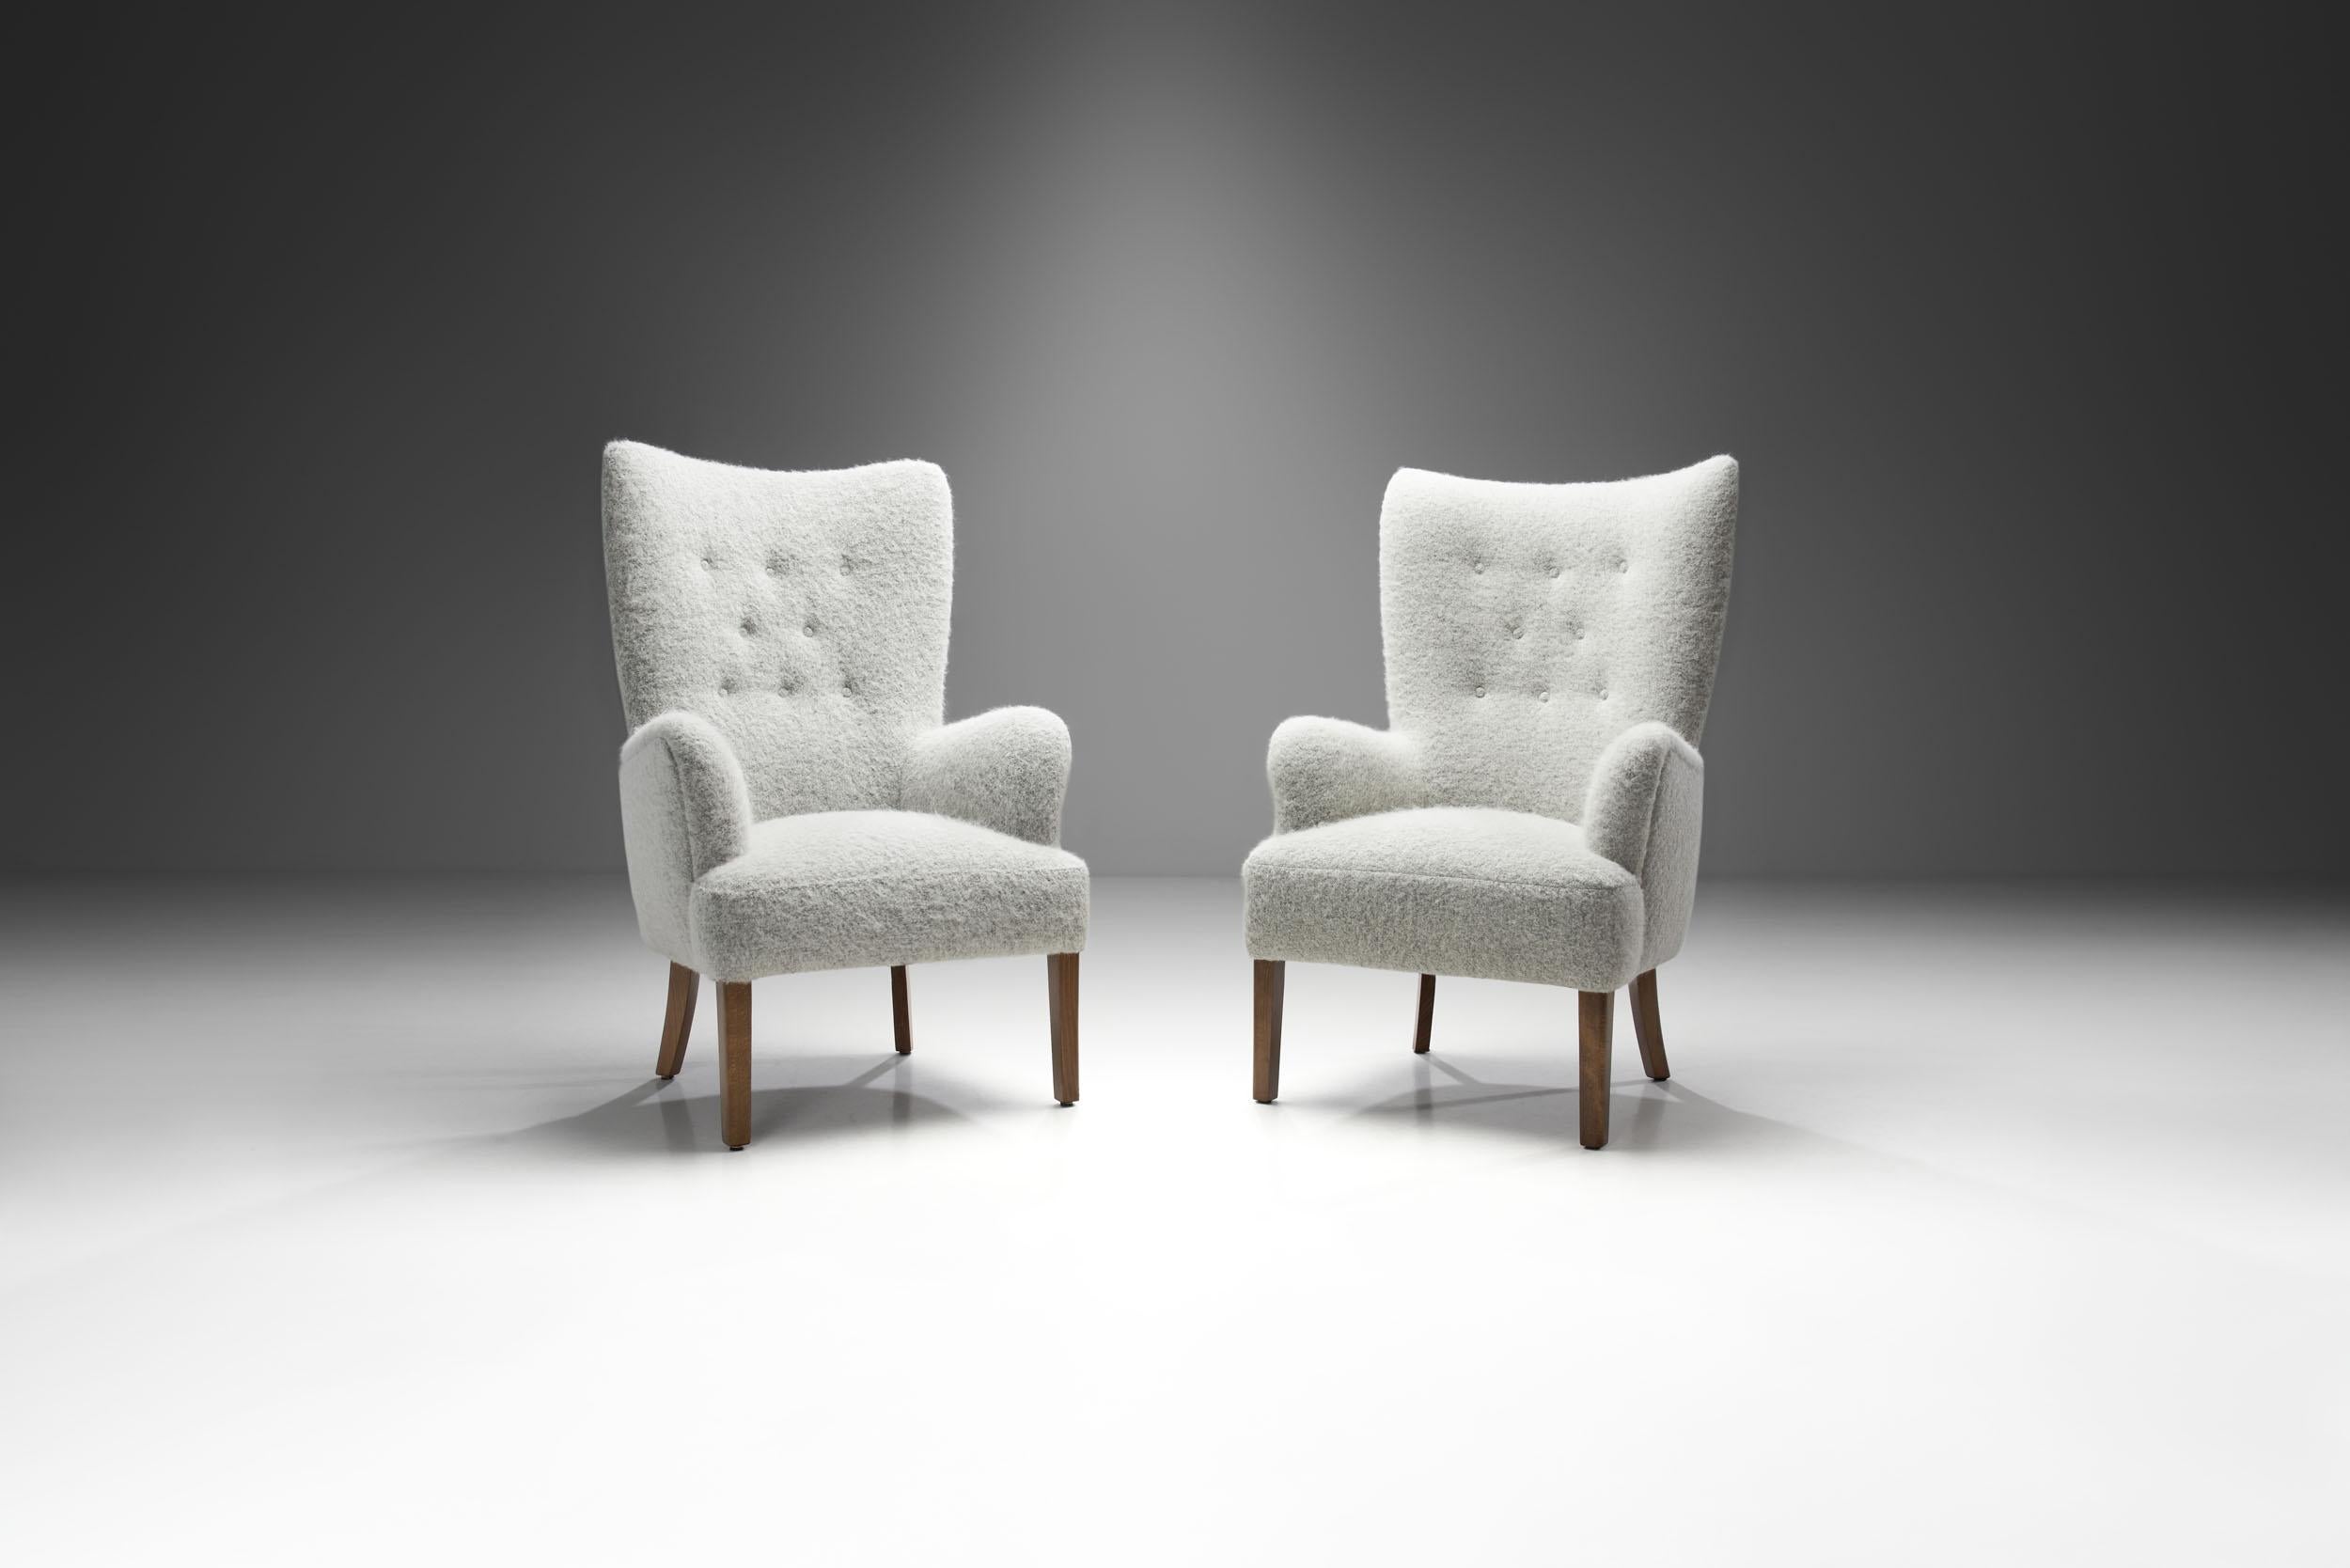 L'esthétique simple et raffinée de cette paire de chaises découle de la réinvention par Ole Wanscher des formes classiques, pour laquelle il est devenu un acteur clé du mouvement danois du milieu du siècle.

Dans ce modèle, Wanscher a combiné